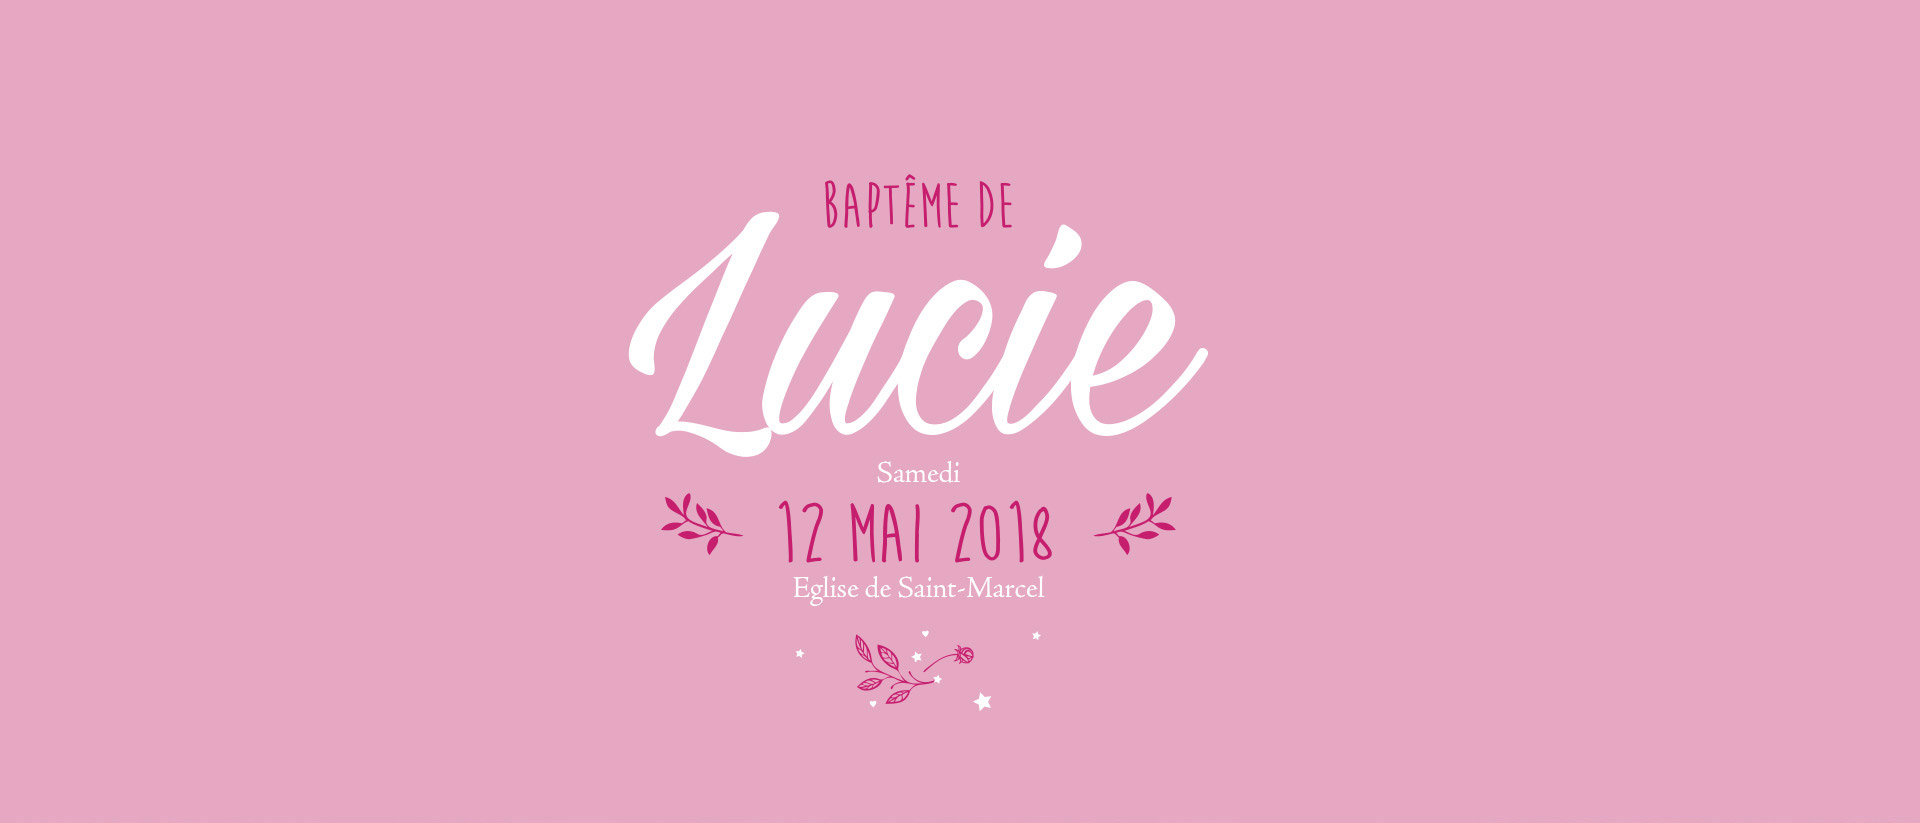 Baptême de Lucie L.